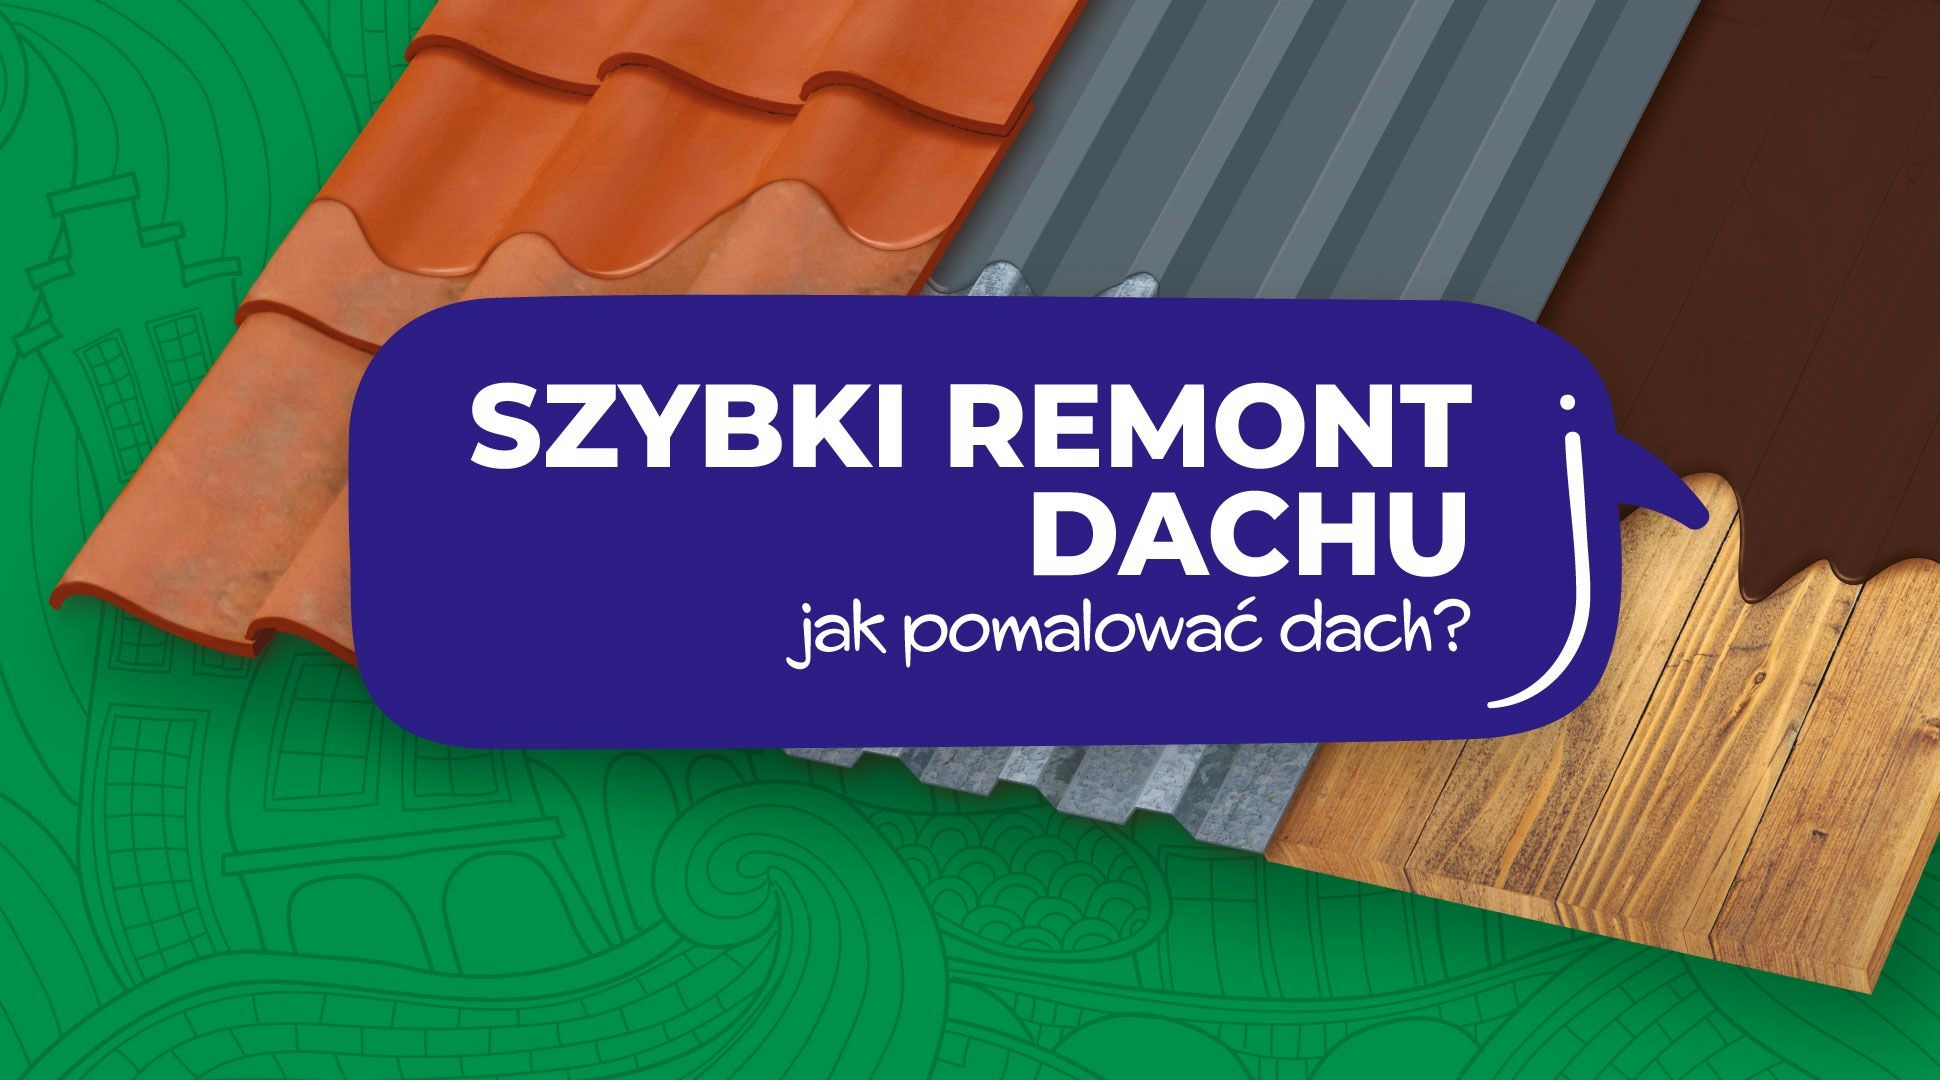 Szybki remont dachu – malowanie dachu.